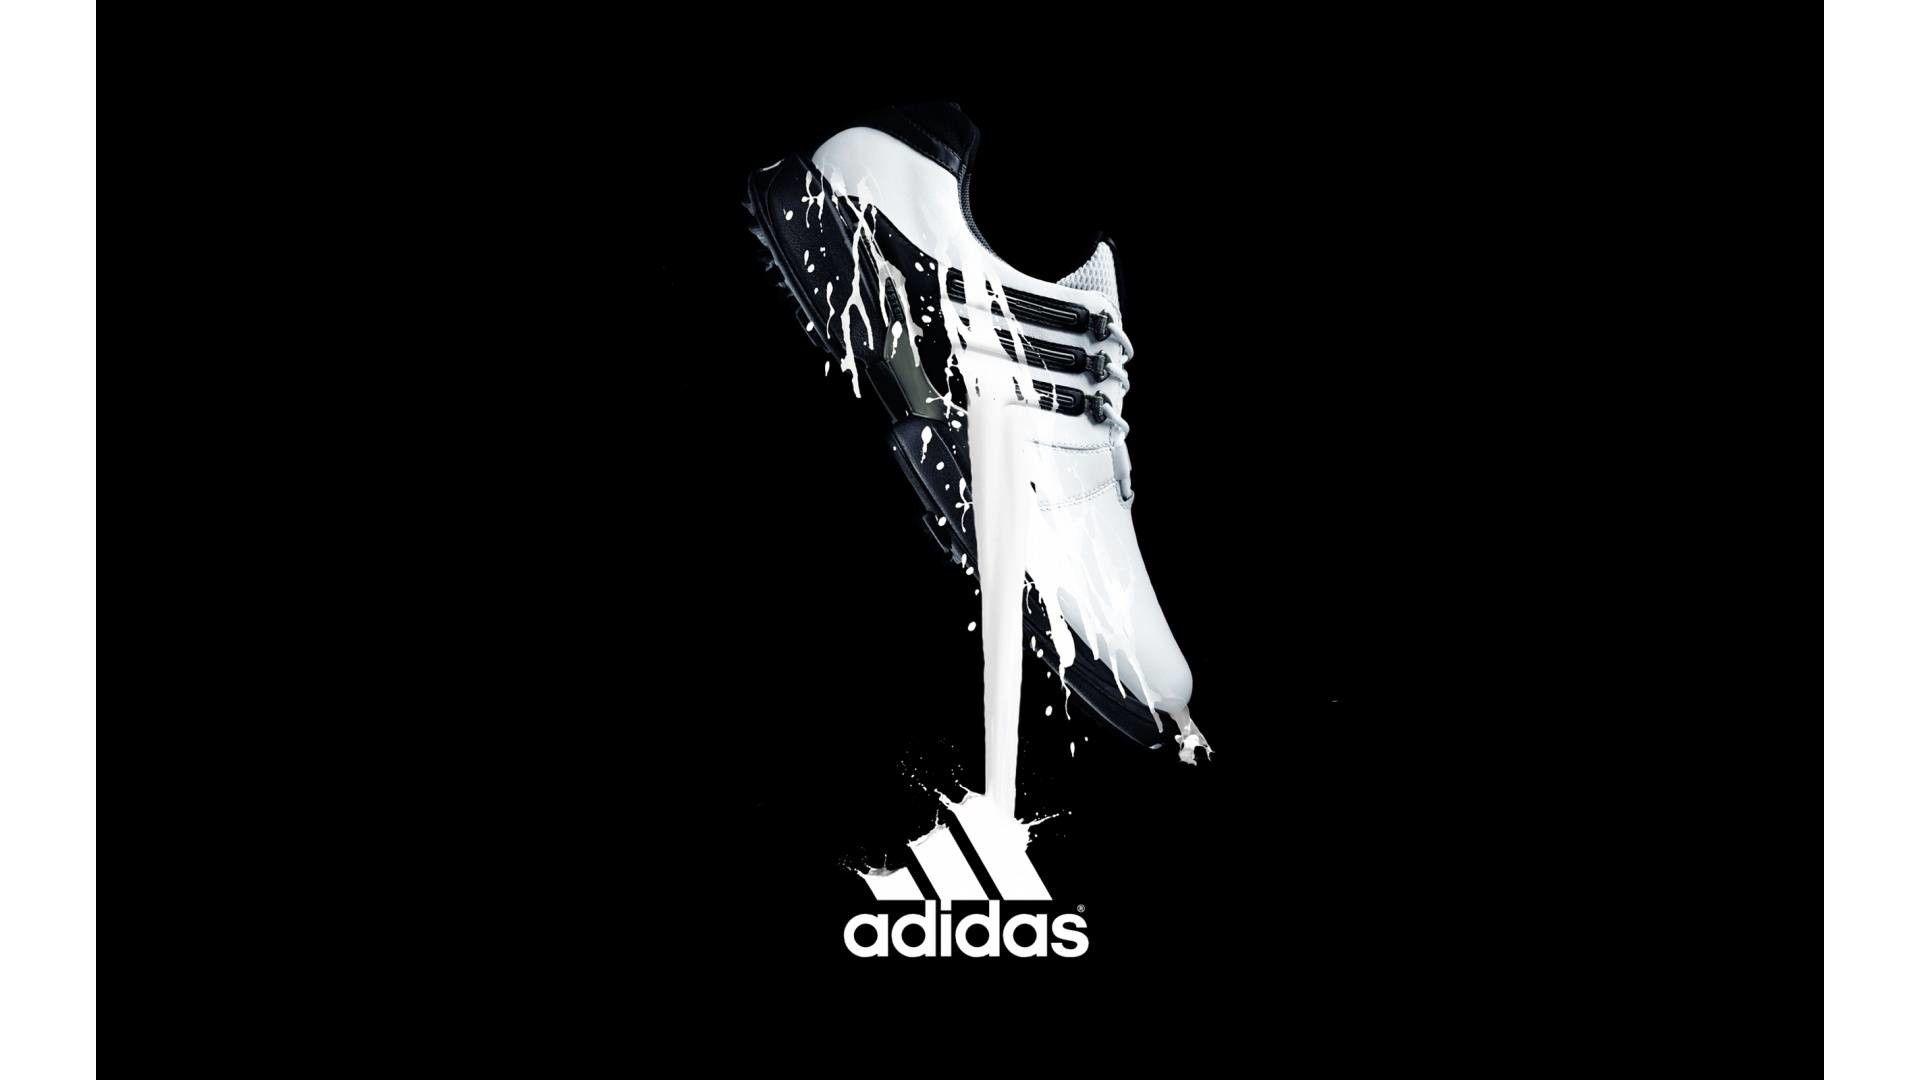 adidas soccer wallpaper